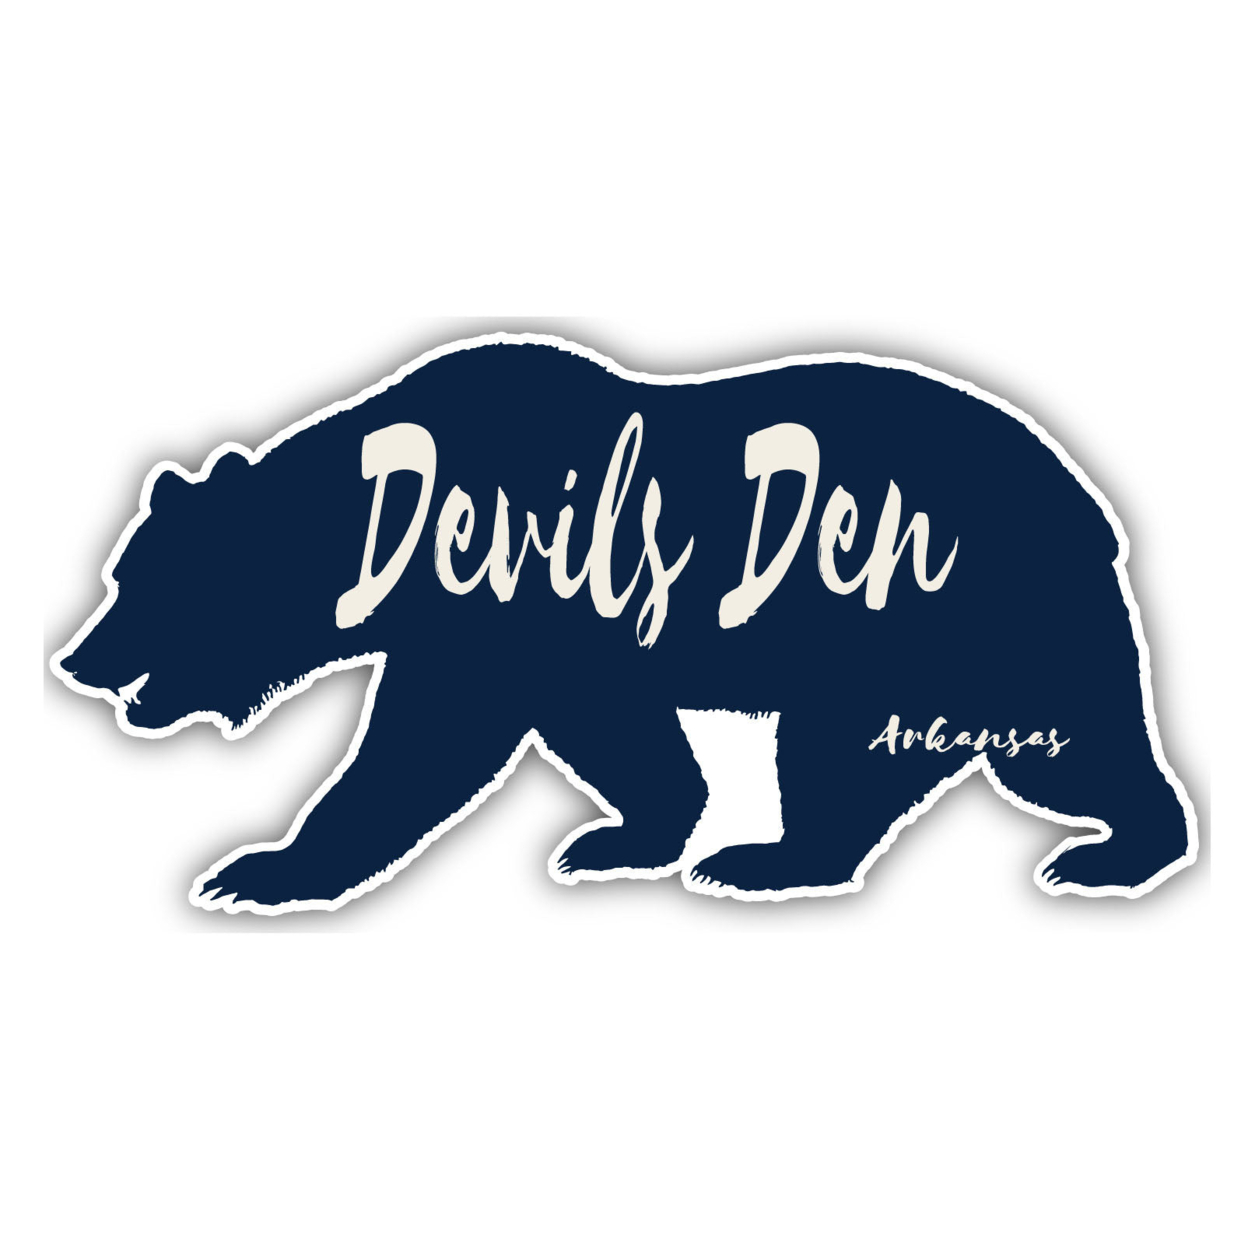 Devils Den Arkansas Souvenir Decorative Stickers (Choose Theme And Size) - Single Unit, 6-Inch, Great Outdoors